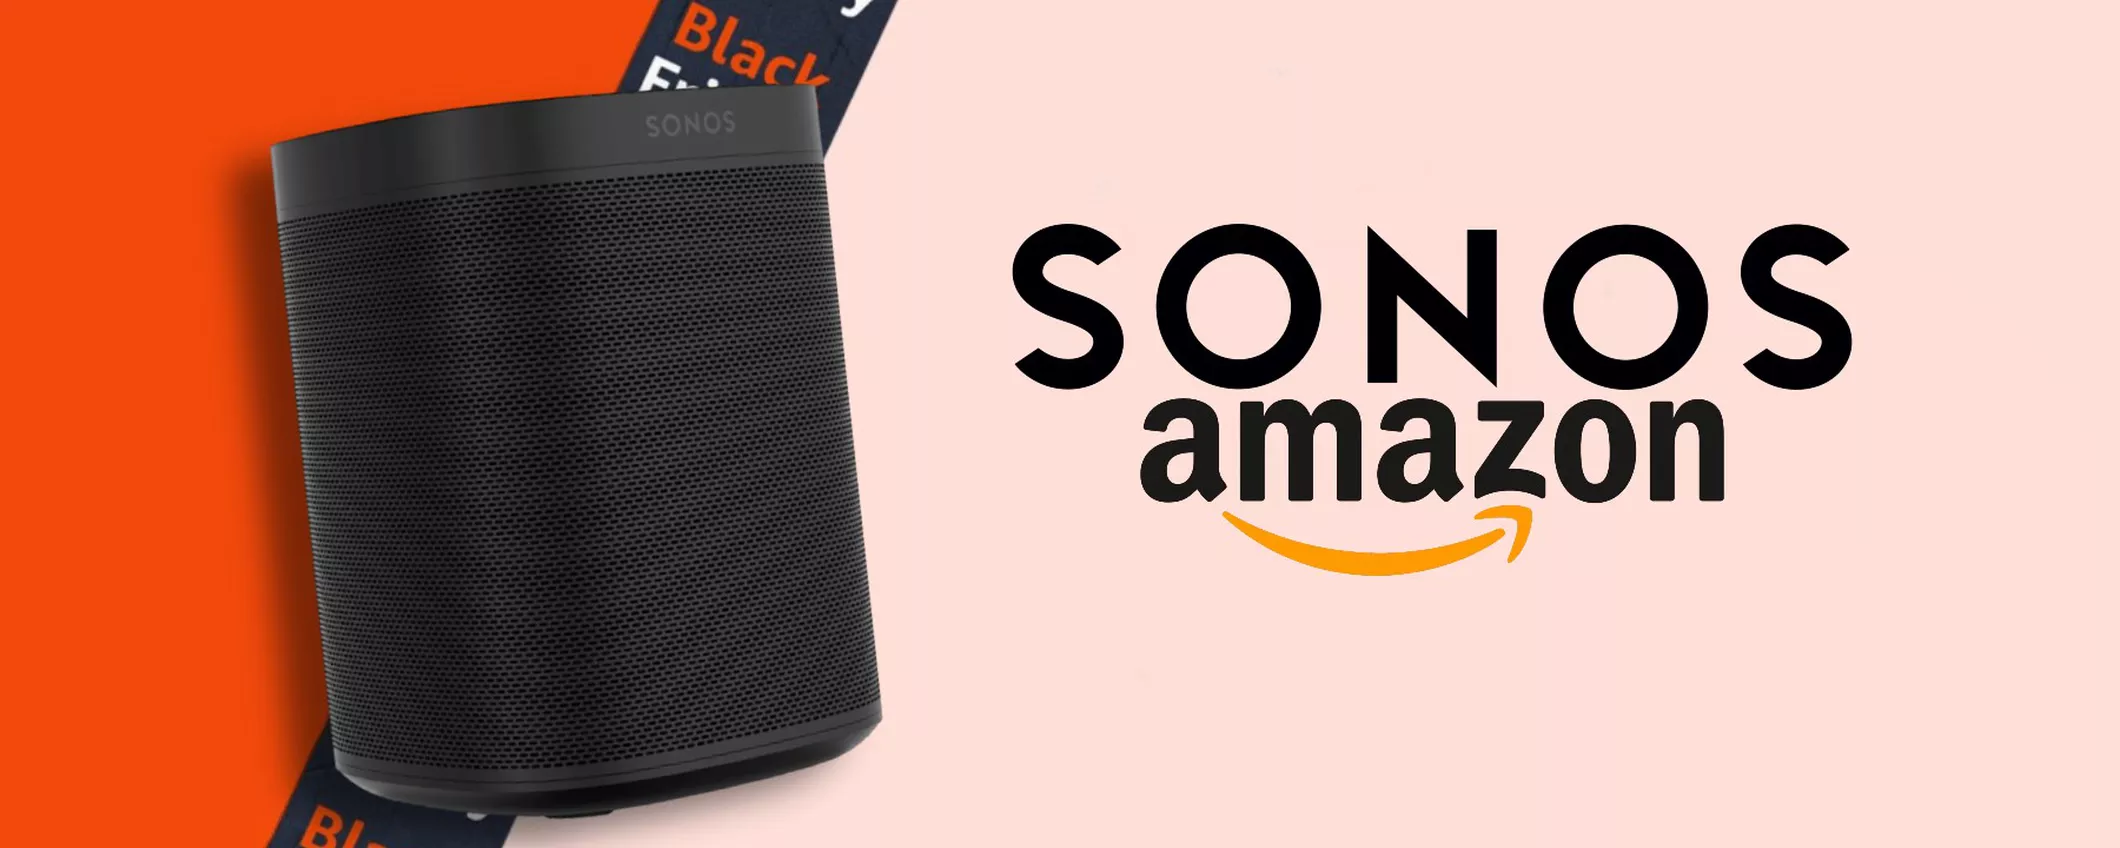 Sonos One (2a Gen): risparmia subito 50€ grazie agli sconti del Black Friday